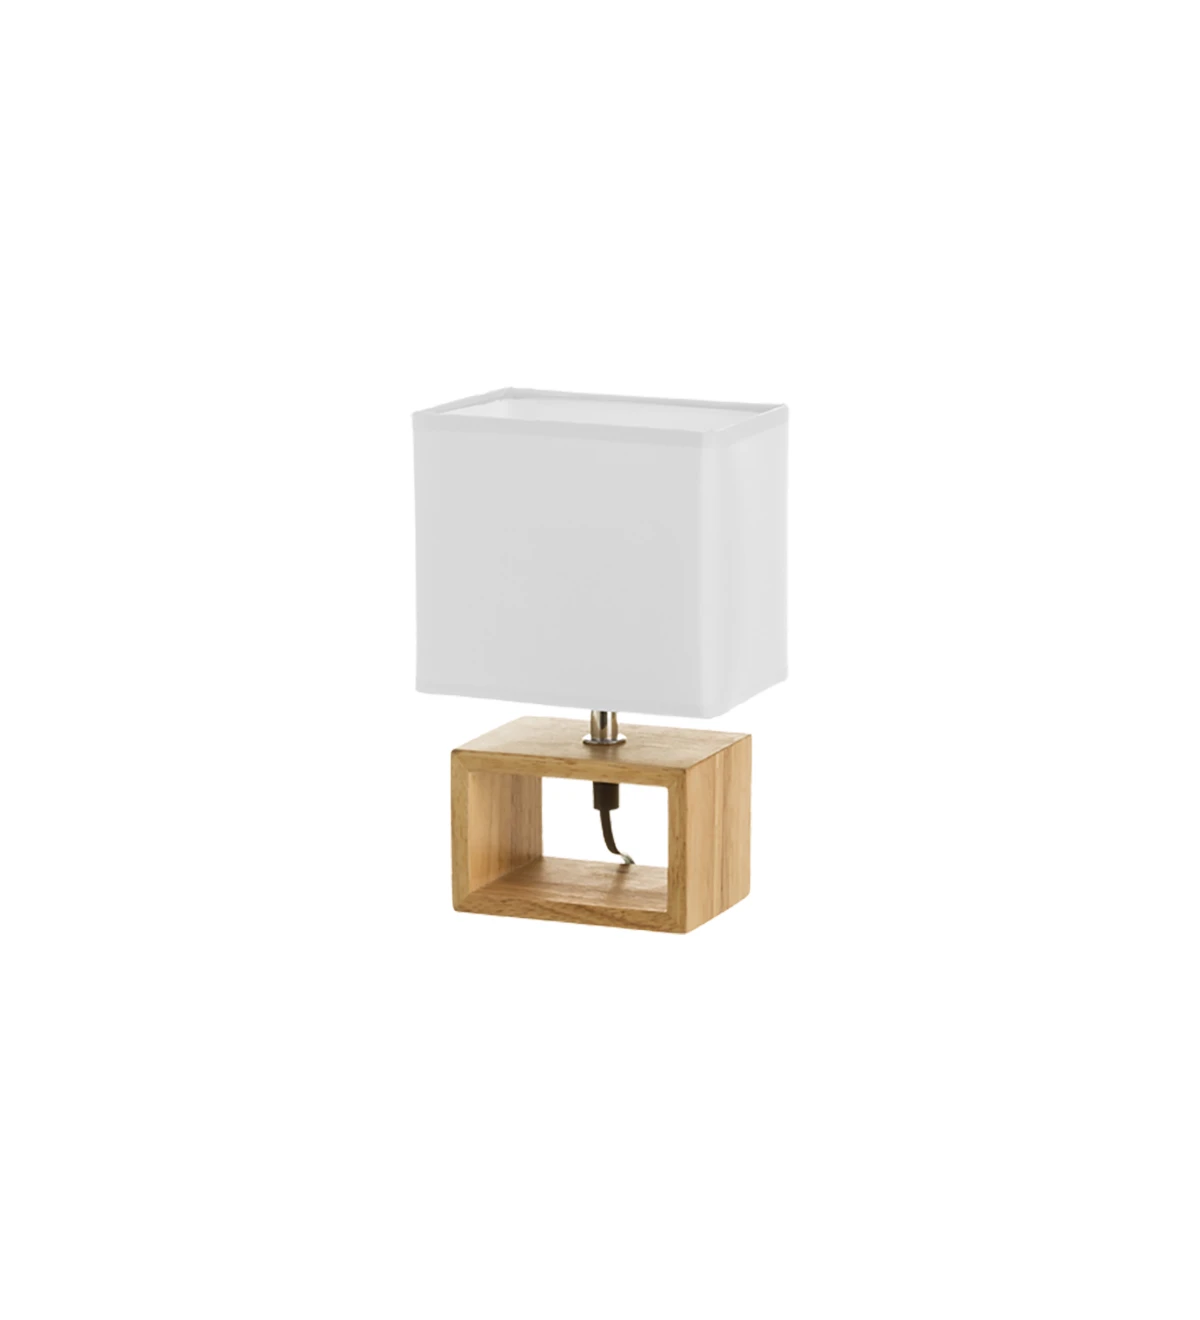  Lampe de table avec base en bois et abat-jour en tissu doublé blanc.